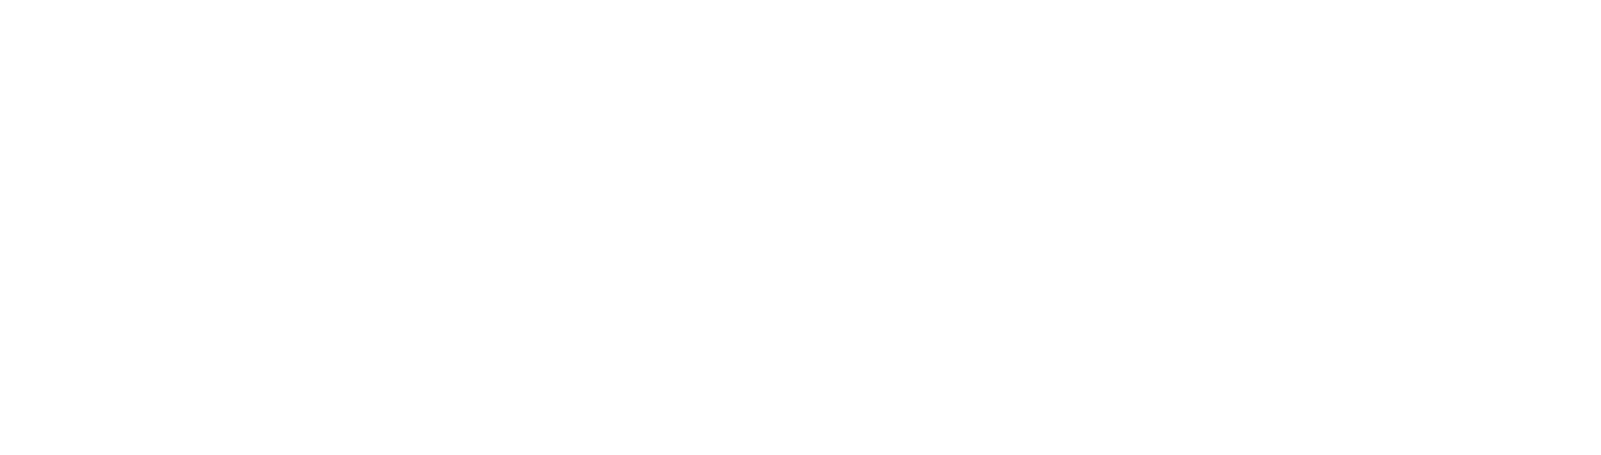 Tredegar Logo groß für dunkle Hintergründe (transparentes PNG)